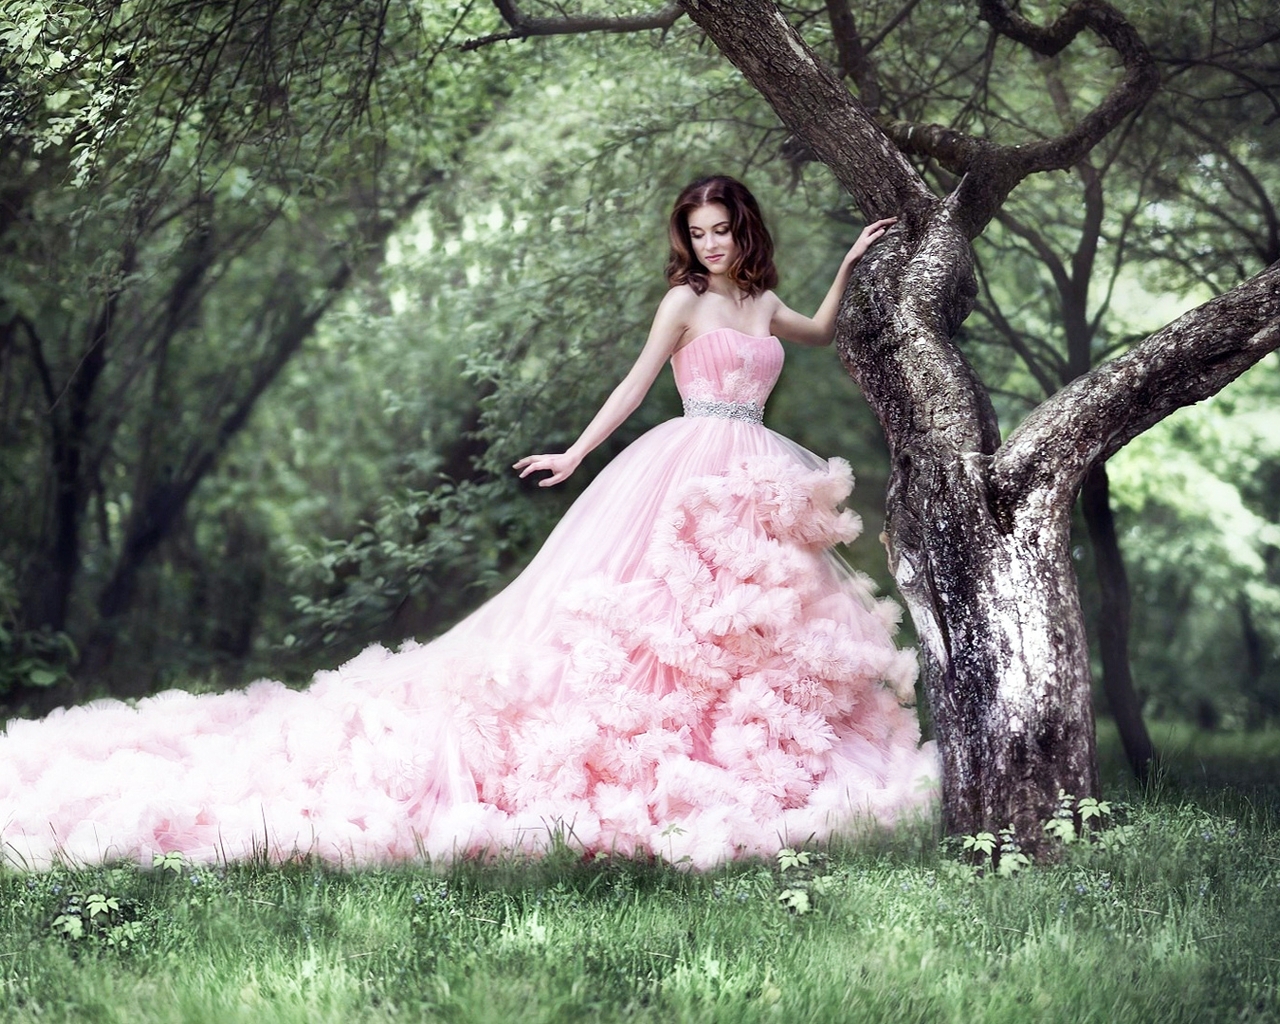 Картинка: Девушка, розовое платье, шлейф, природа, трава, деревья, листва